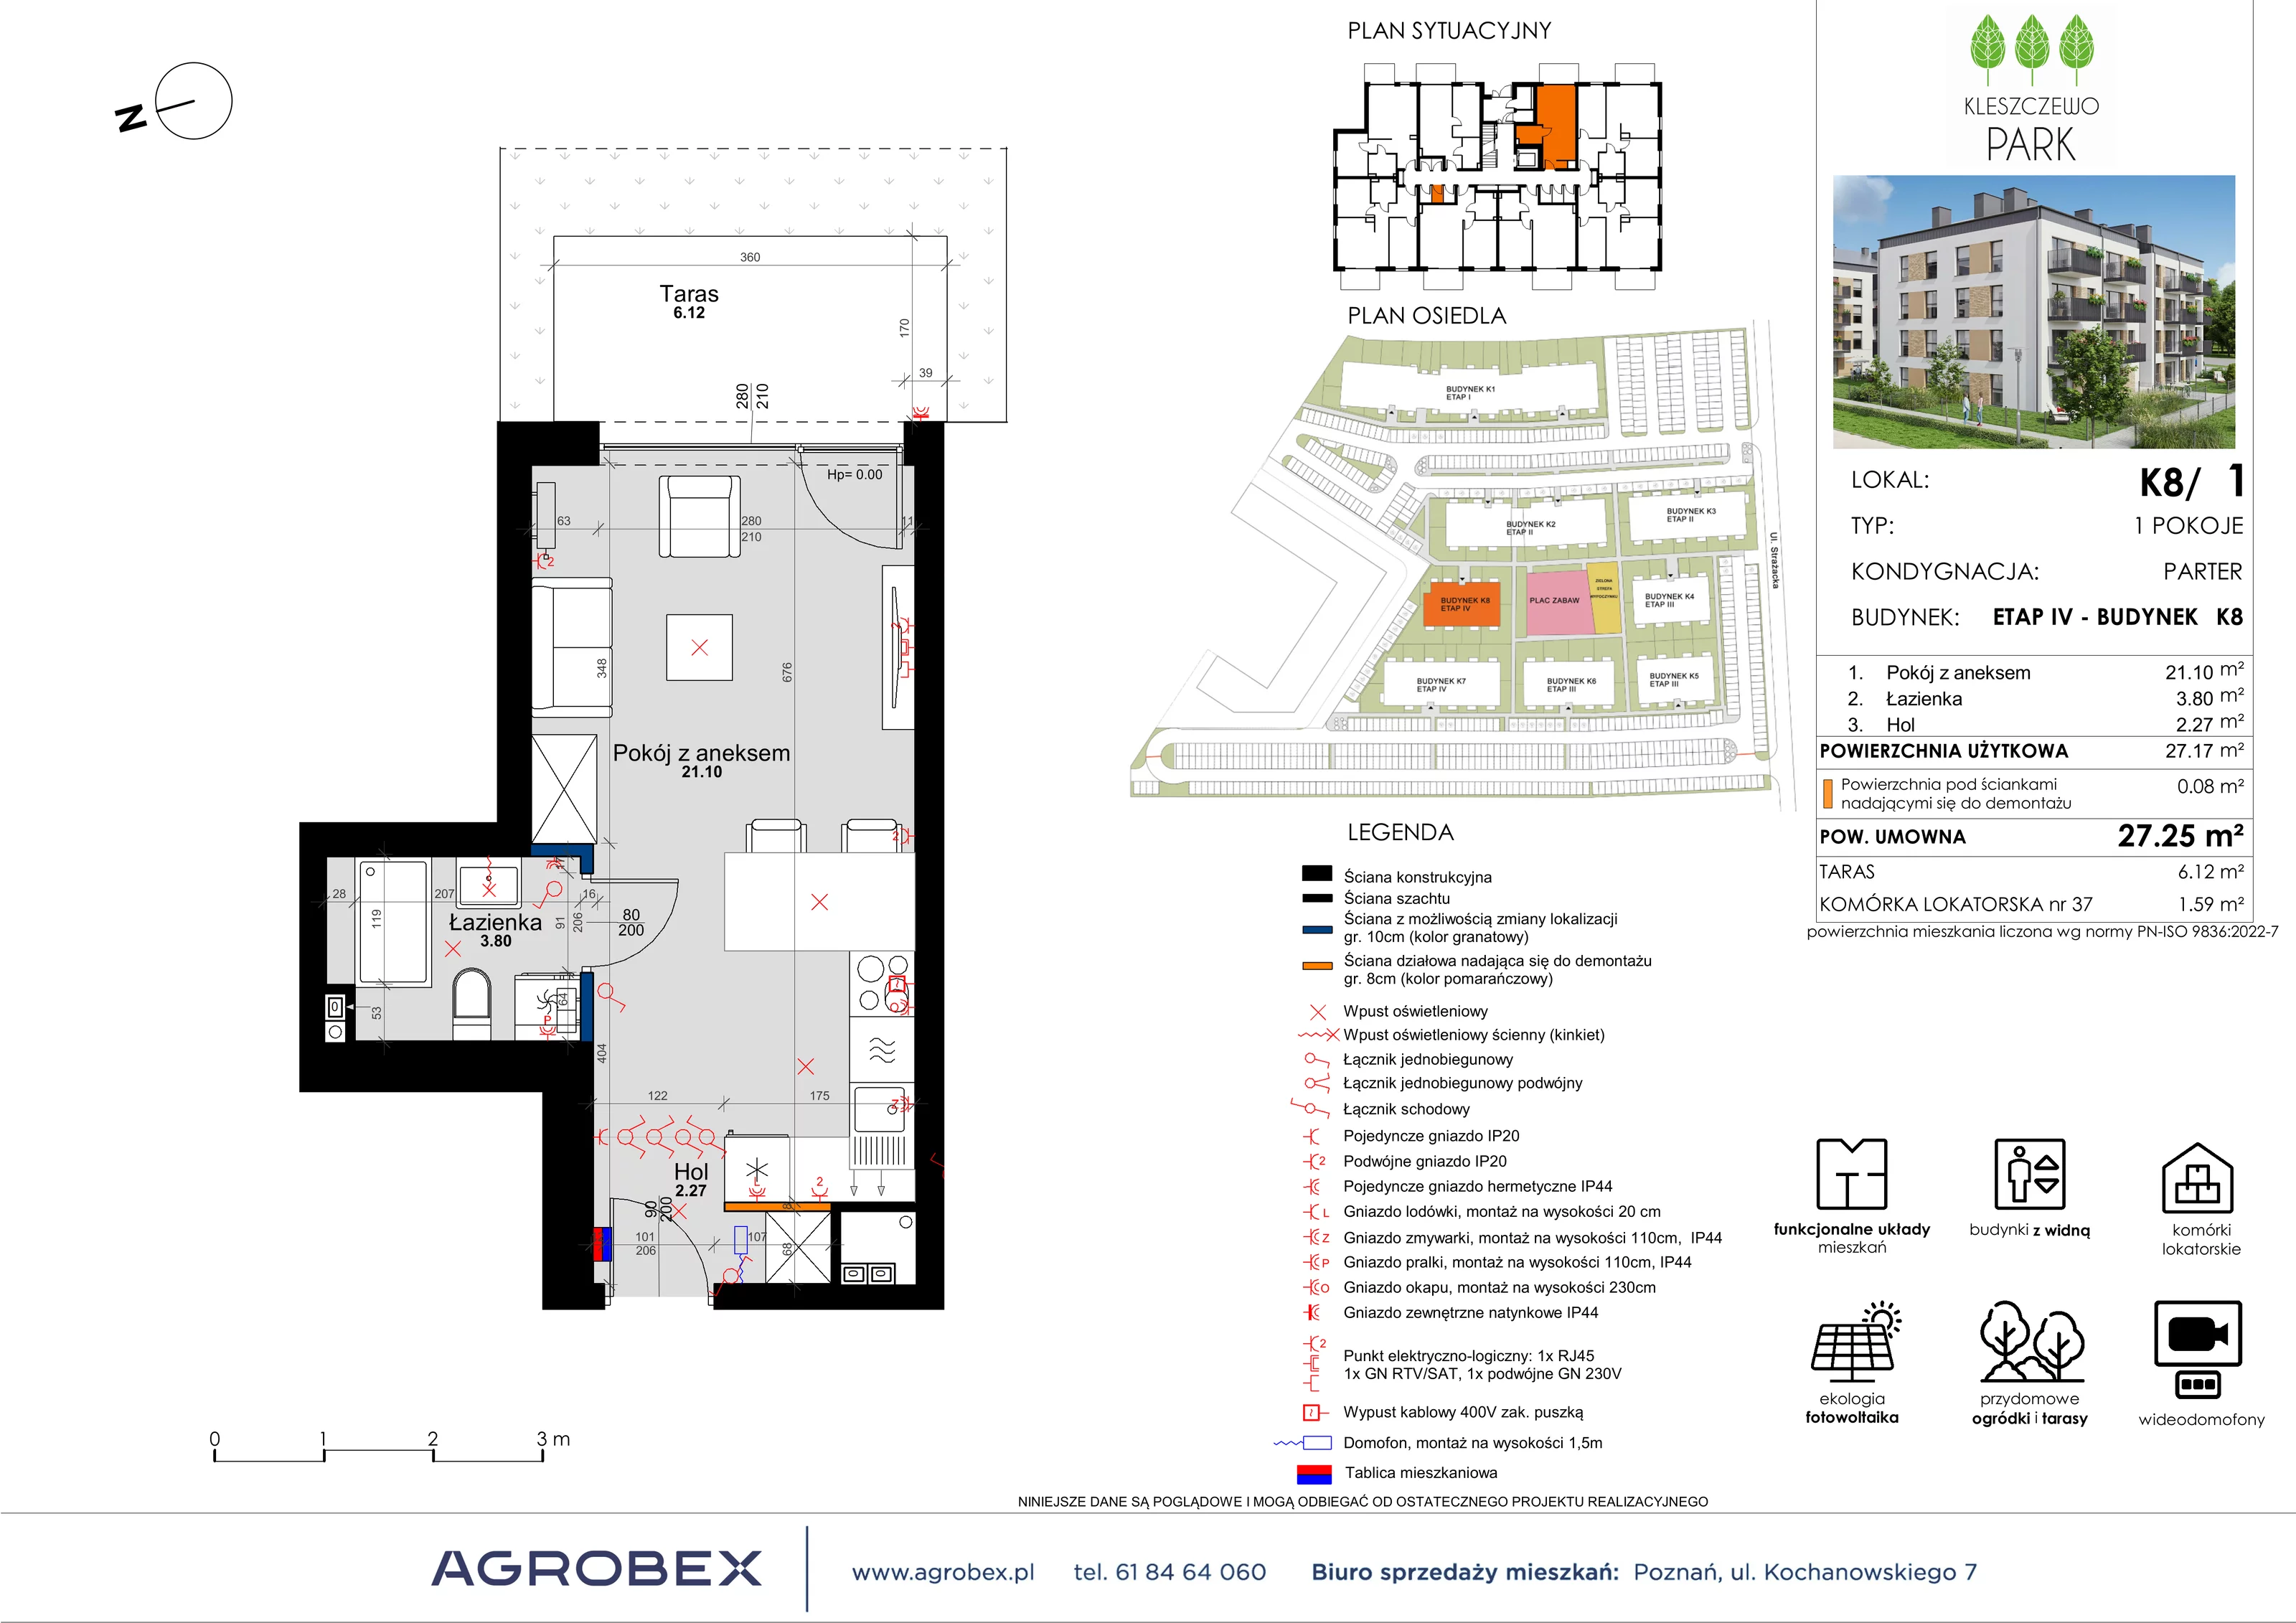 Mieszkanie 27,25 m², parter, oferta nr K8/1, Kleszczewo Park, Kleszczewo, ul. Wiesławy Szymborskiej 1